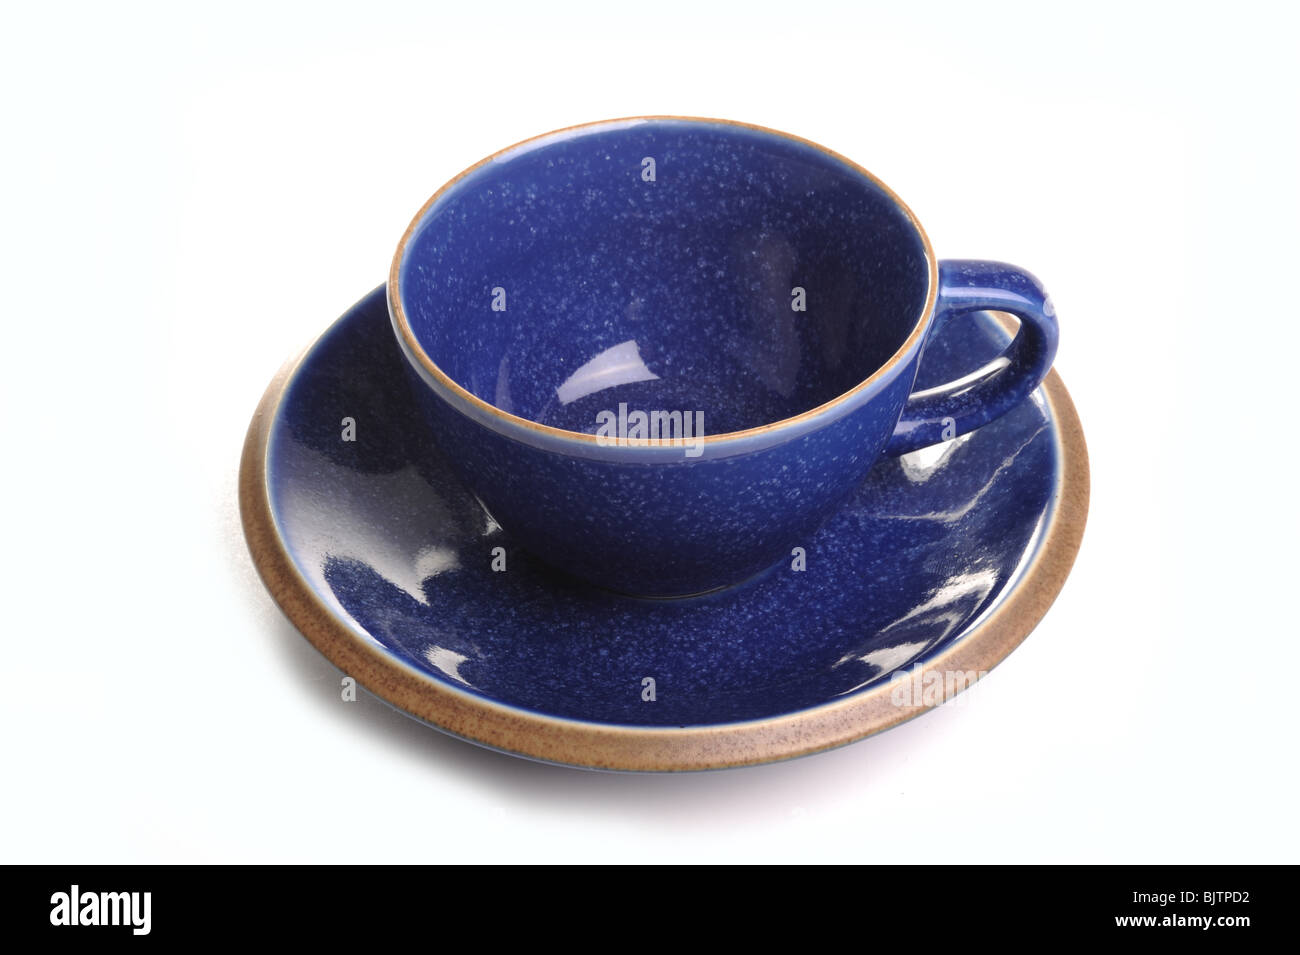 Taza y plato de té azul fotografiado en estudio con un fondo blanco. Foto de stock